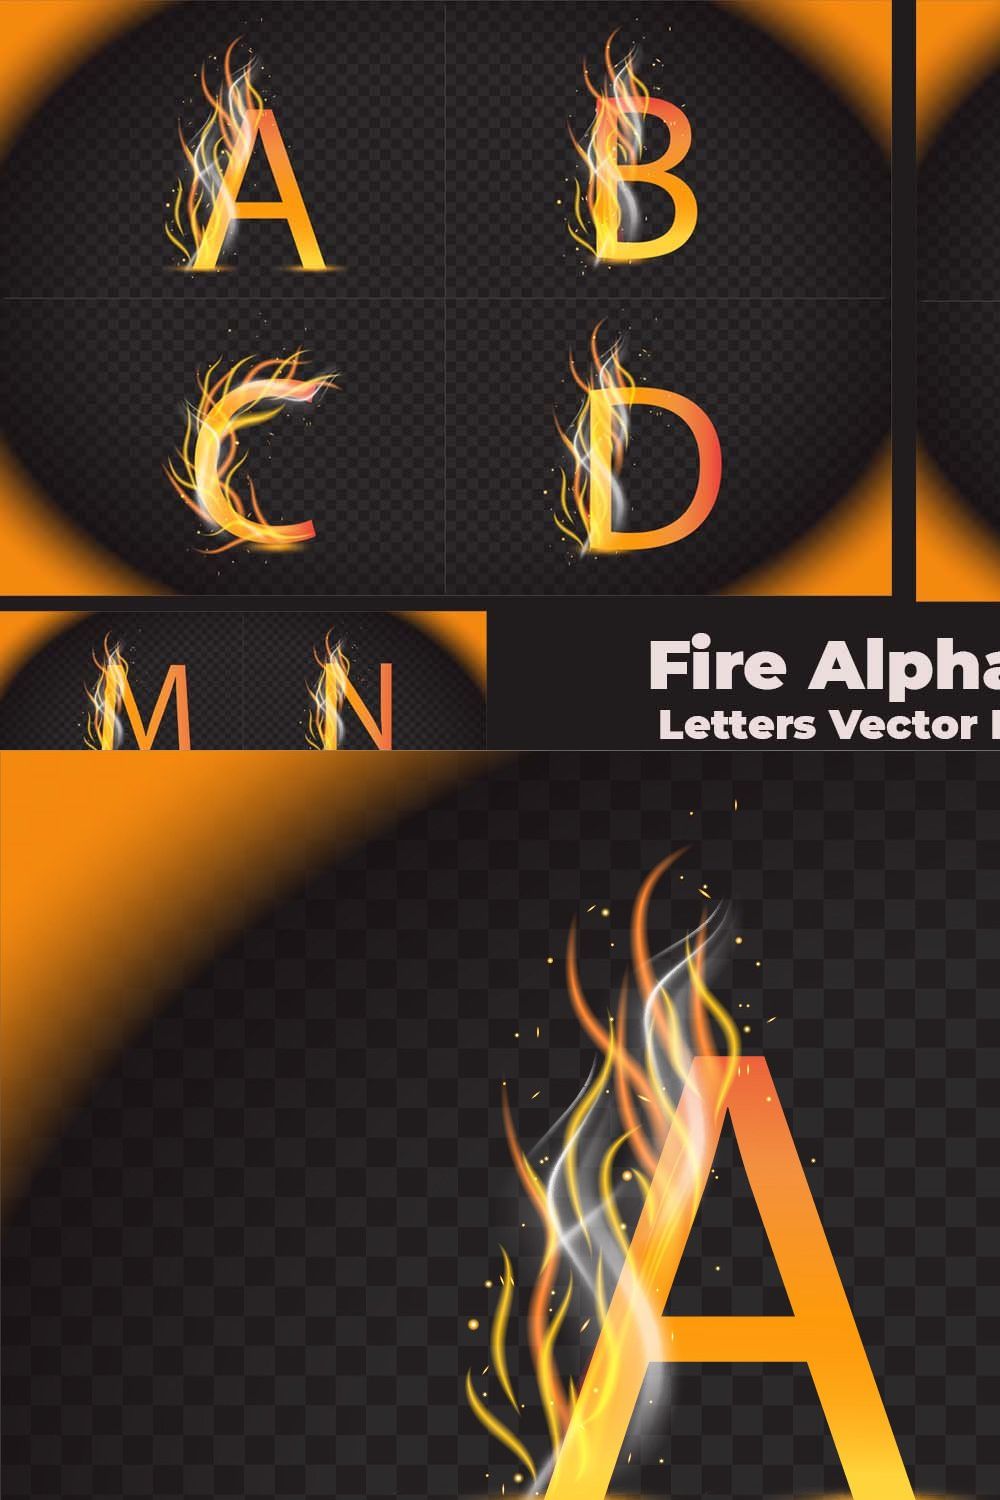 Fire Alphabet Letters Design pinterest preview image.